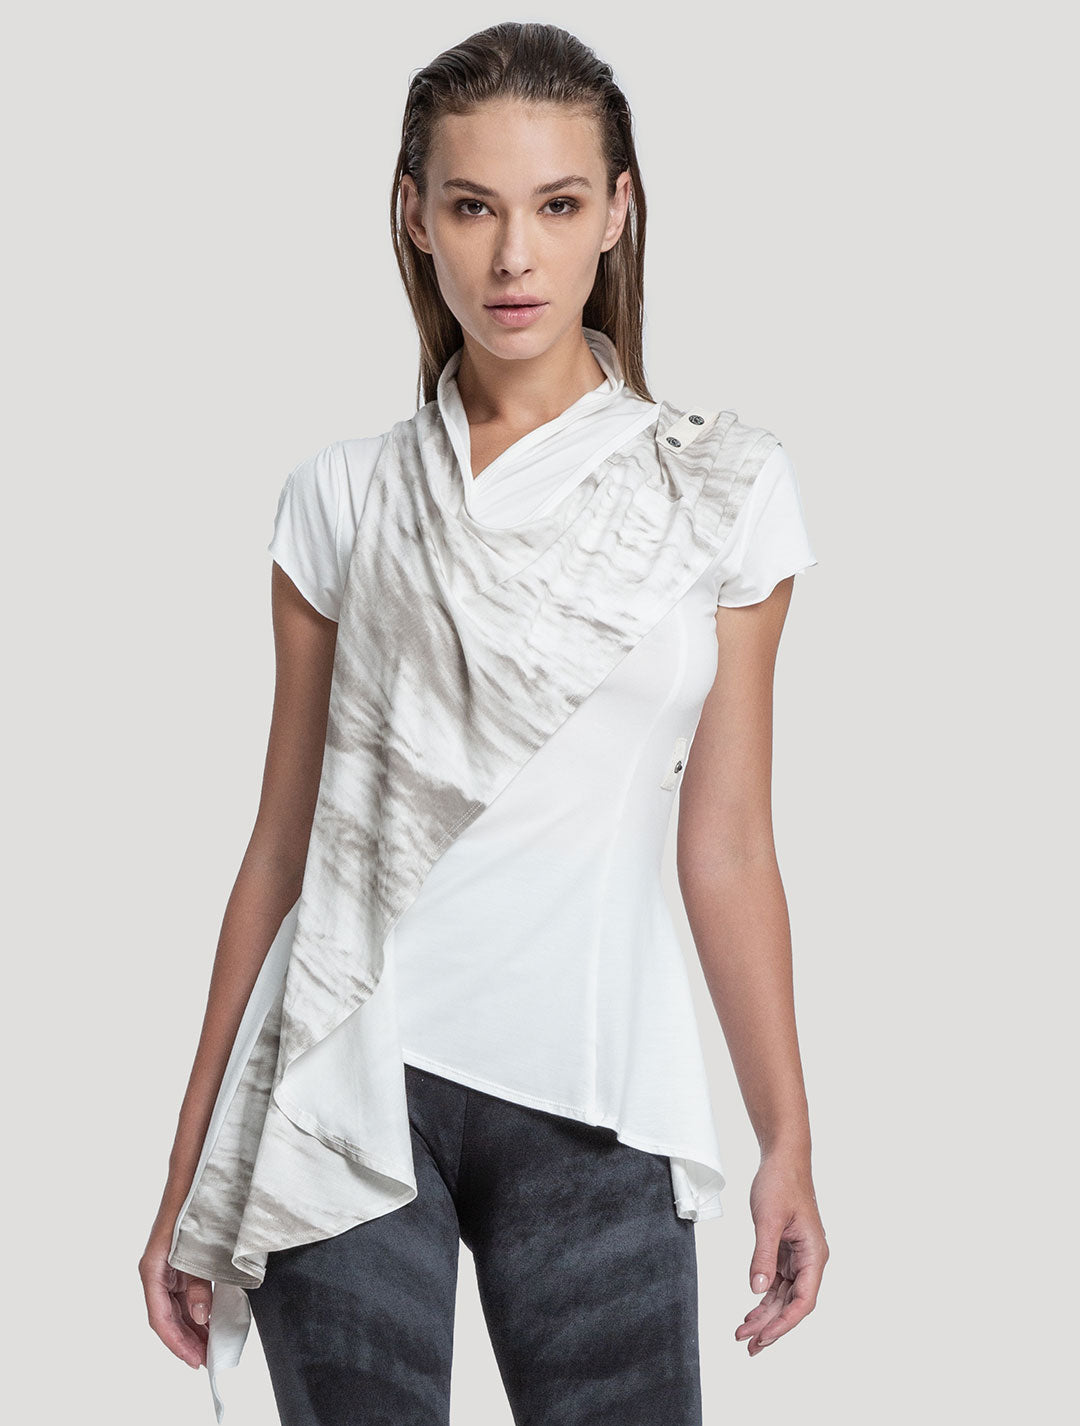 'Virgo' Off White Top - Psylo Fashion